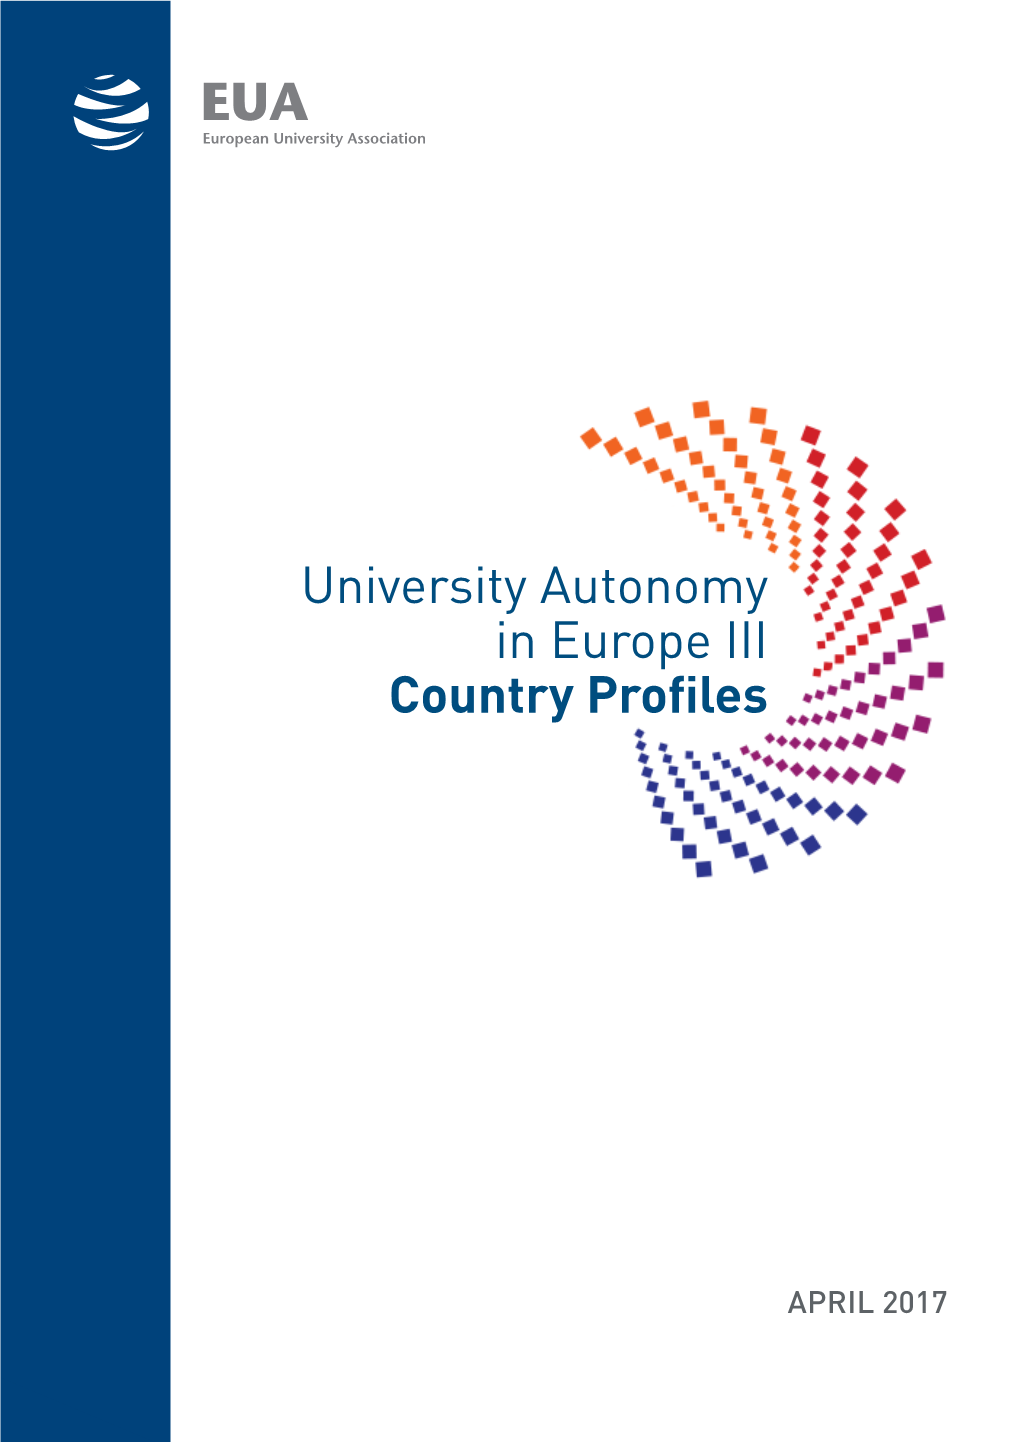 University Autonomy in Europe III Country Profiles